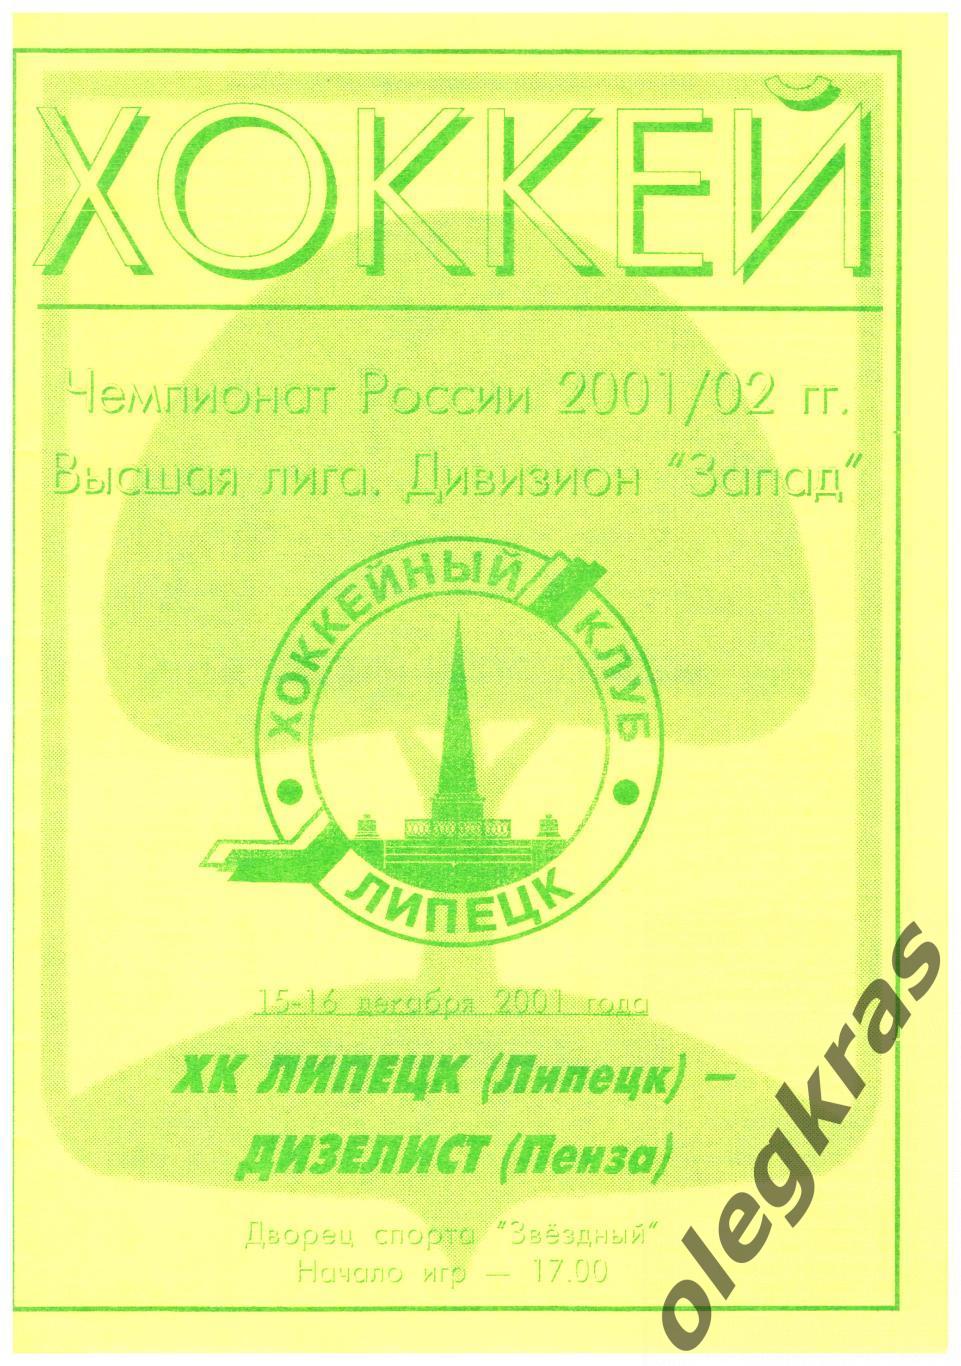 ХК Липецк(Липецк) - Дизелист(Пенза) - 15-16 декабря 2001 года.